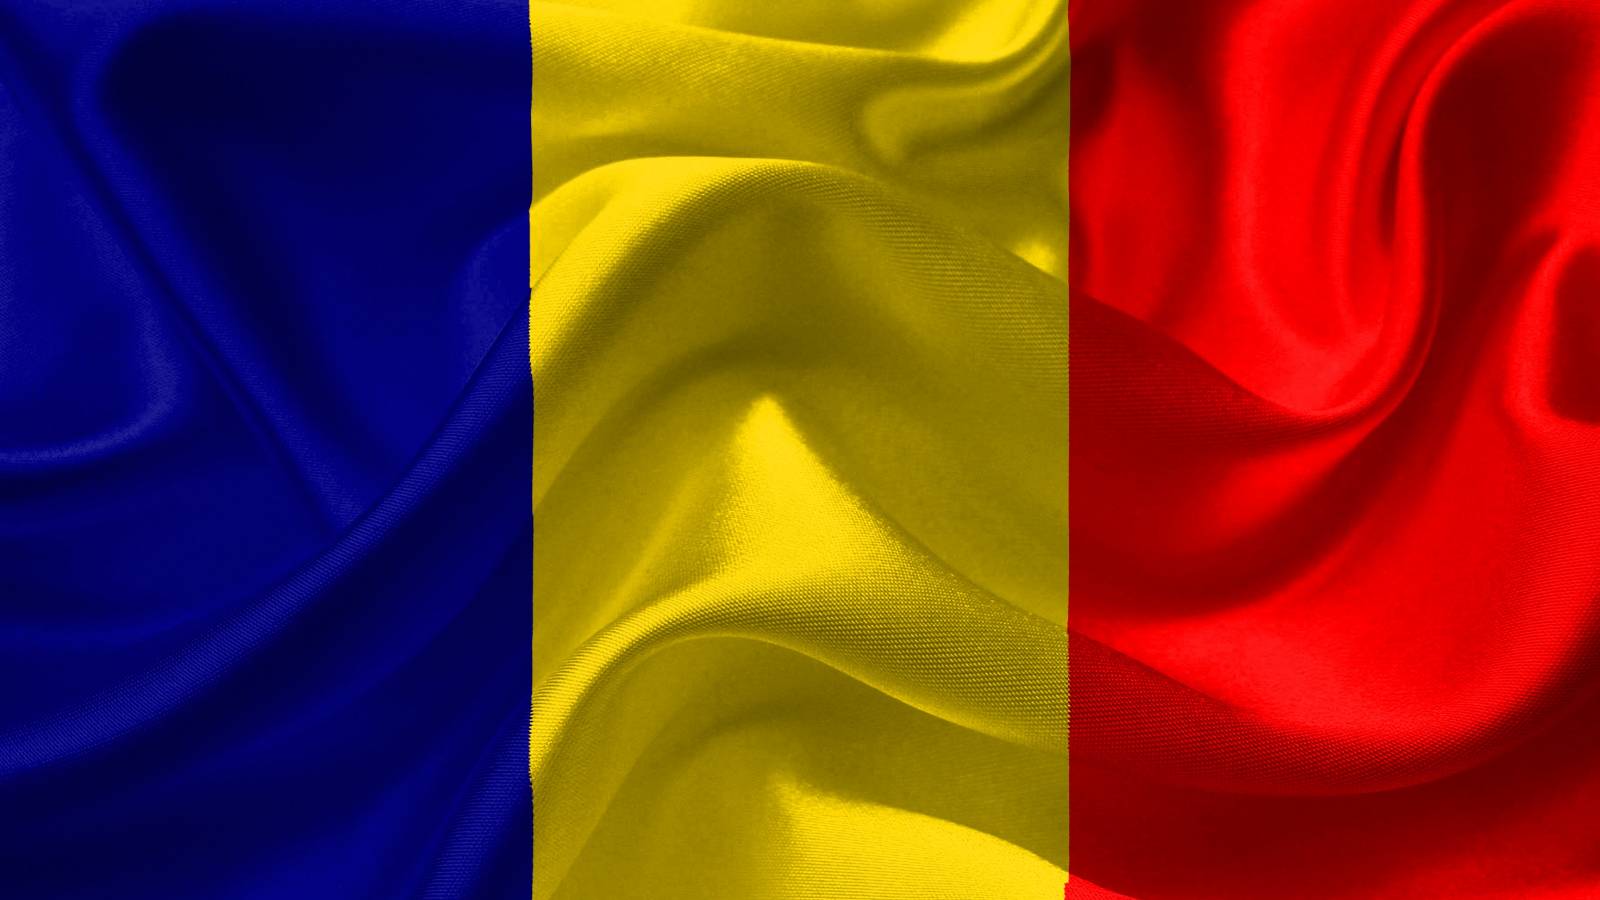 Des exercices importants du Mémorandum d'accord sur le règlement des différends en Roumanie ont eu lieu ces jours-ci